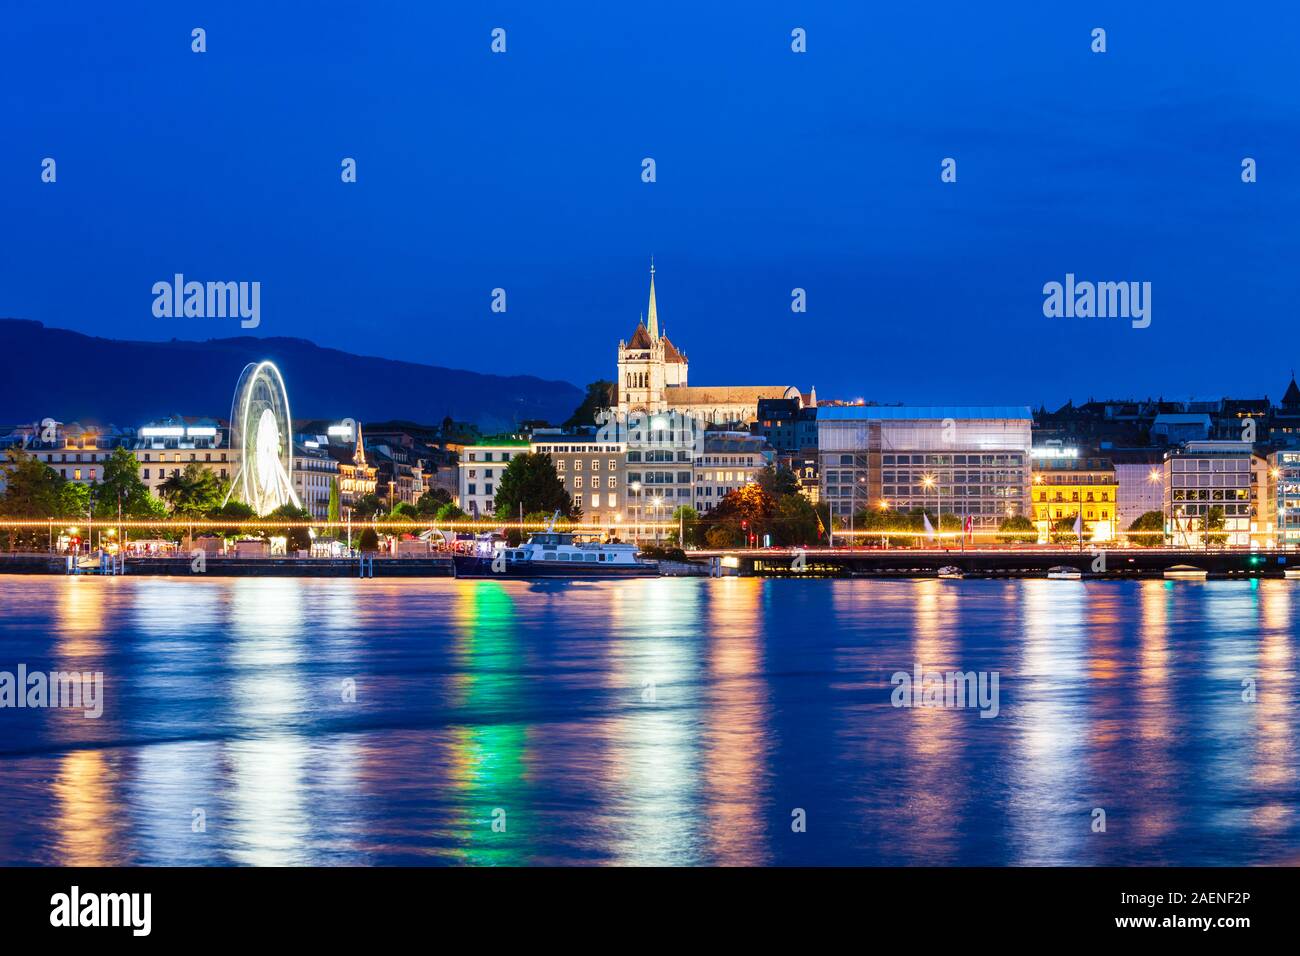 Città di Ginevra vista panoramica. Ginevra o Geneve è la seconda città più popolosa della Svizzera, situato sul Lago di Ginevra. Foto Stock